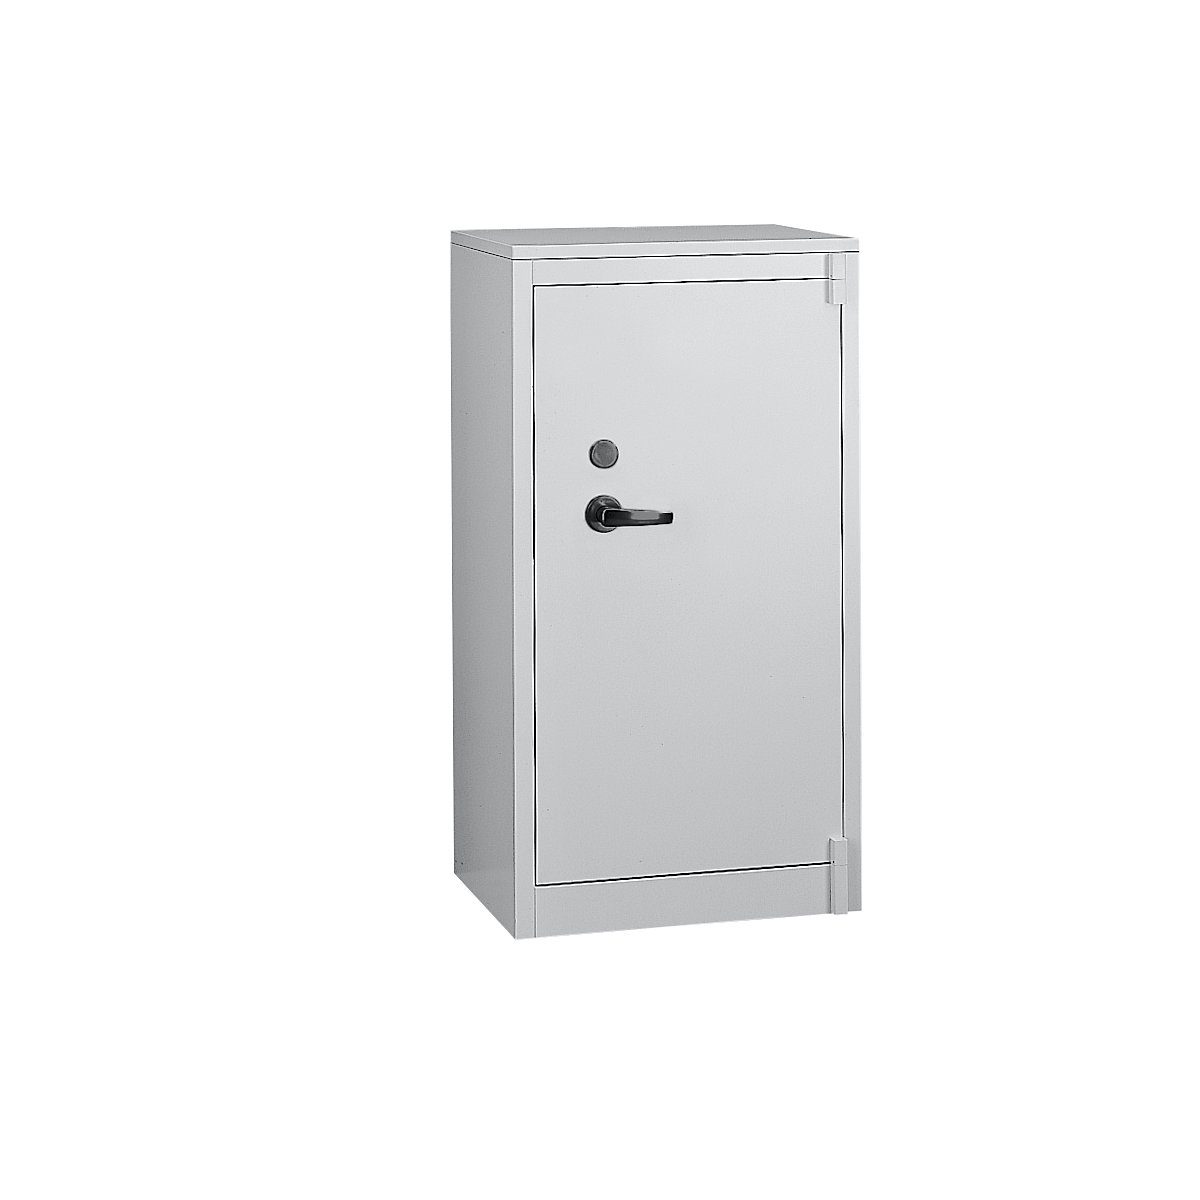 Steel cupboard, fireproof – C+P, DIN 4102 compliant, HxWxD 1226 x 650 x 500 mm, light grey-16